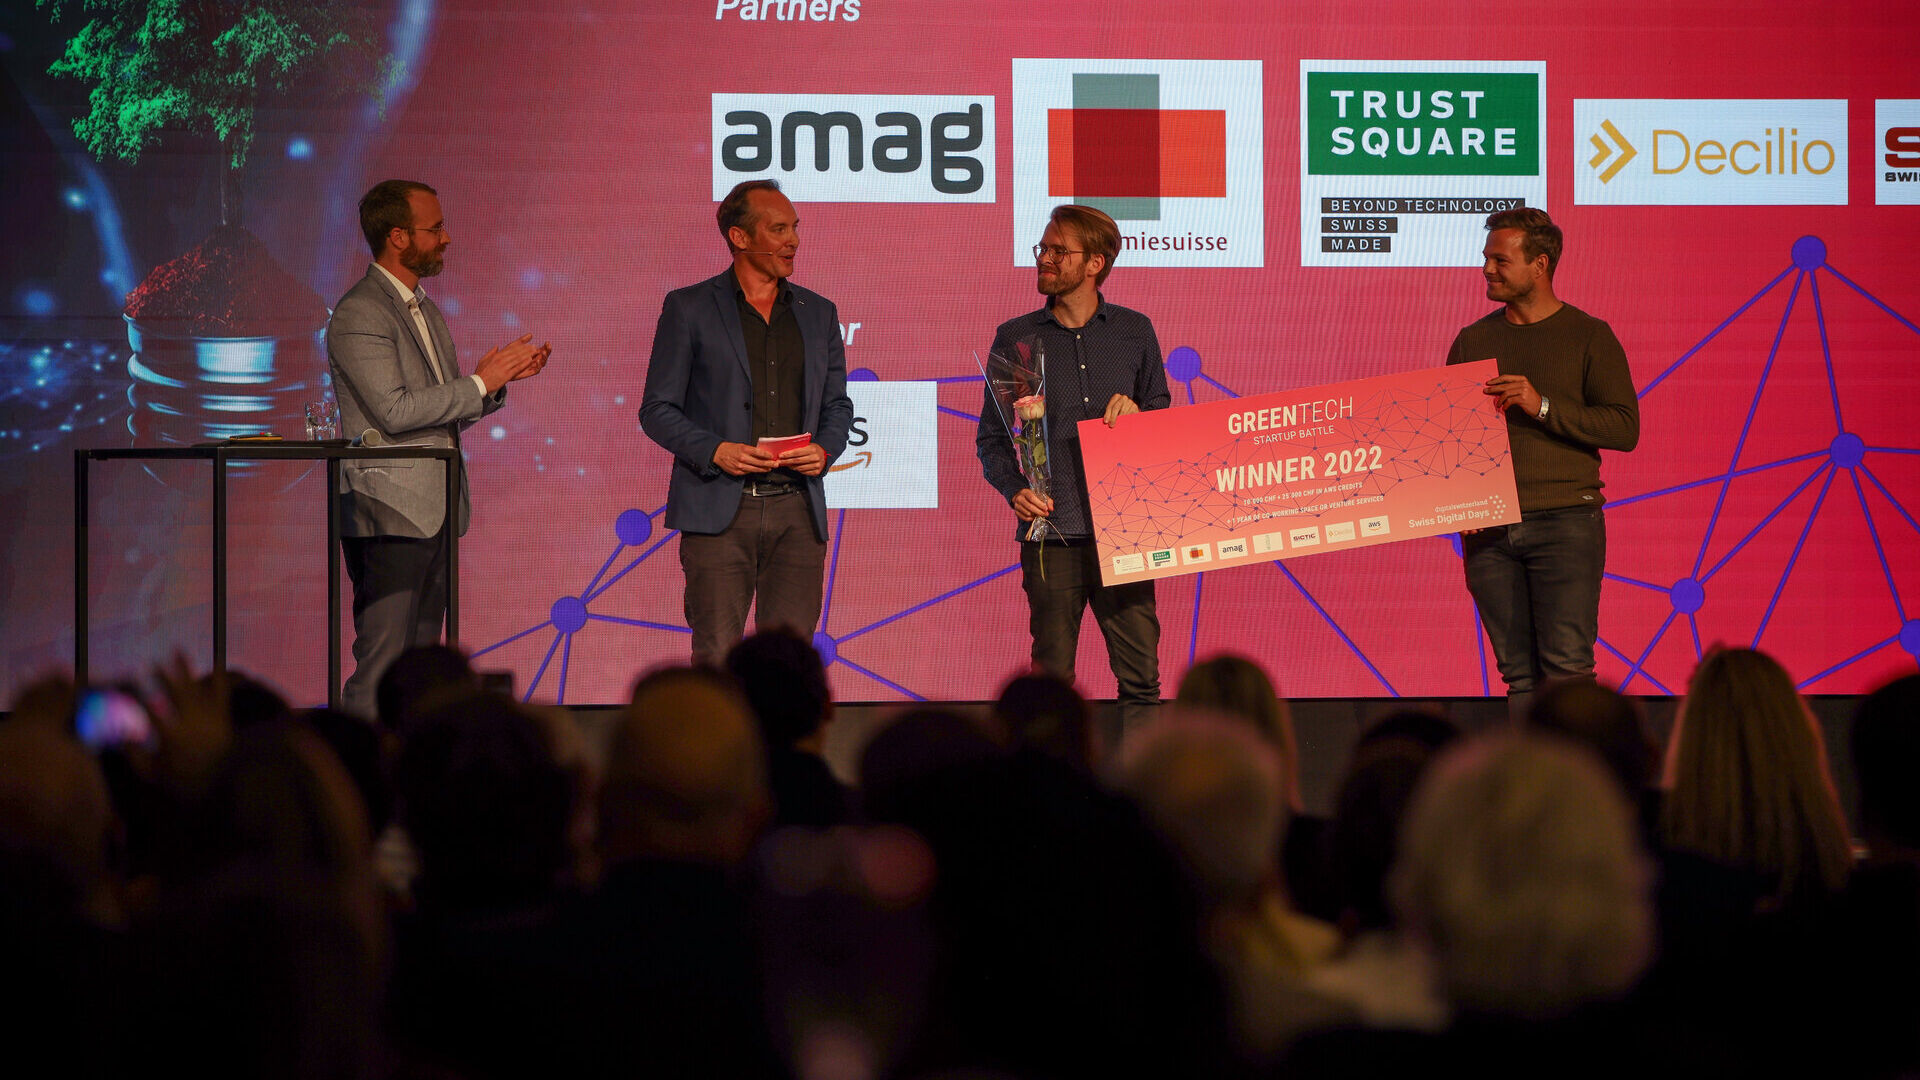 Швајцарски дигитални денови: последниот настан на „Швајцарските дигитални денови“ 2022 година во Фрајруум во Цуг (Цуг) на 27 октомври: церемонијата на доделување награди на иницијативата „Гринтек стартап битка“ со победа на viboo